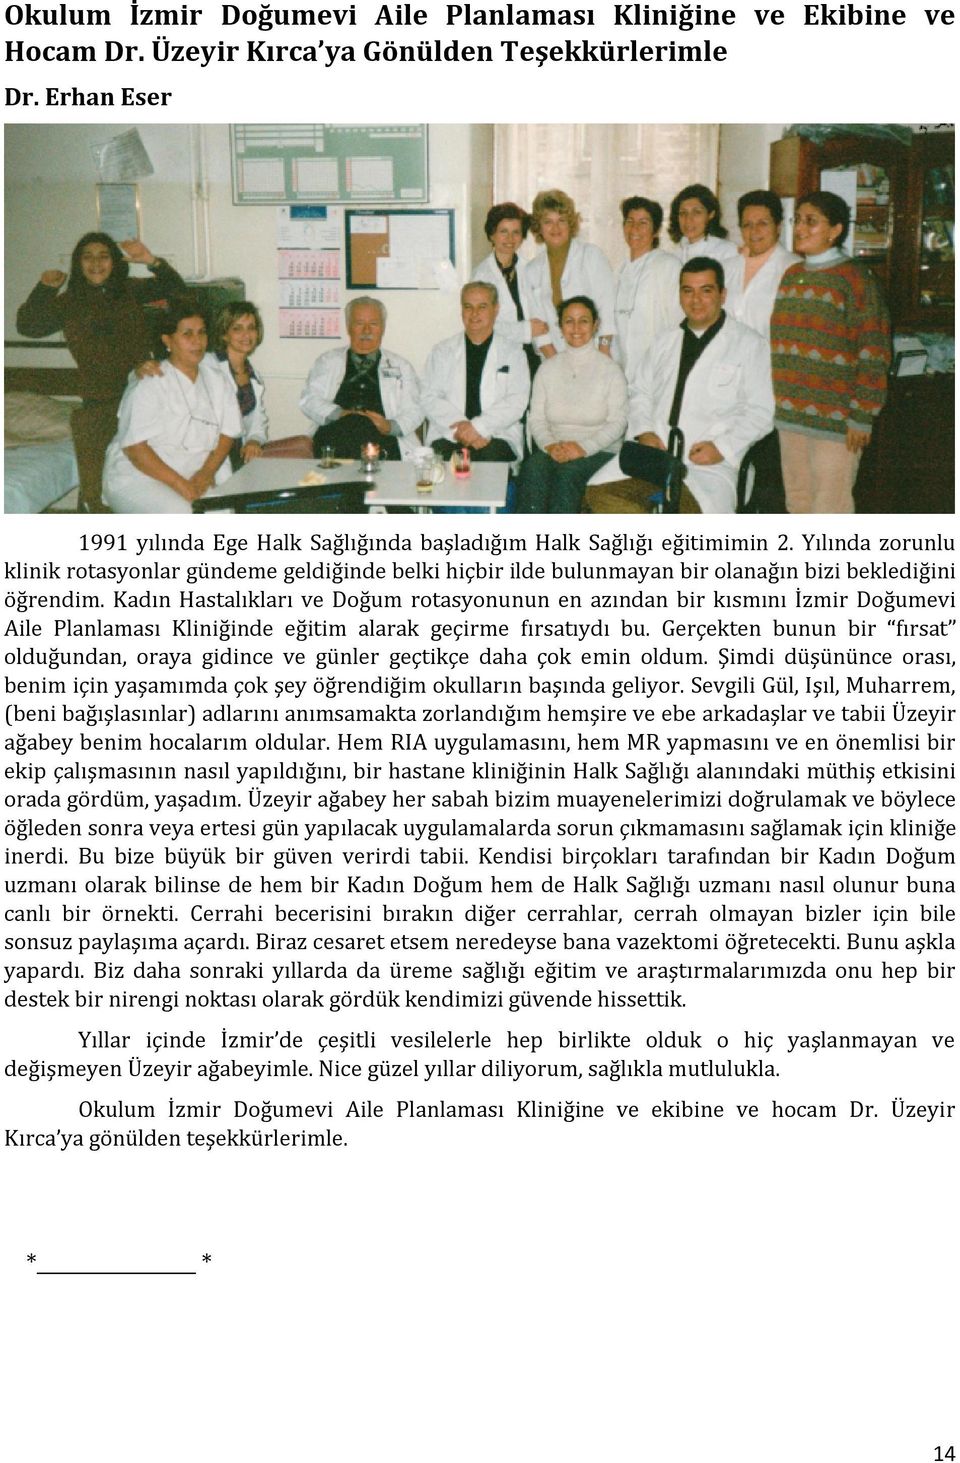 Kadın Hastalıkları ve Doğum rotasyonunun en azından bir kısmını İzmir Doğumevi Aile Planlaması Kliniğinde eğitim alarak geçirme fırsatıydı bu.